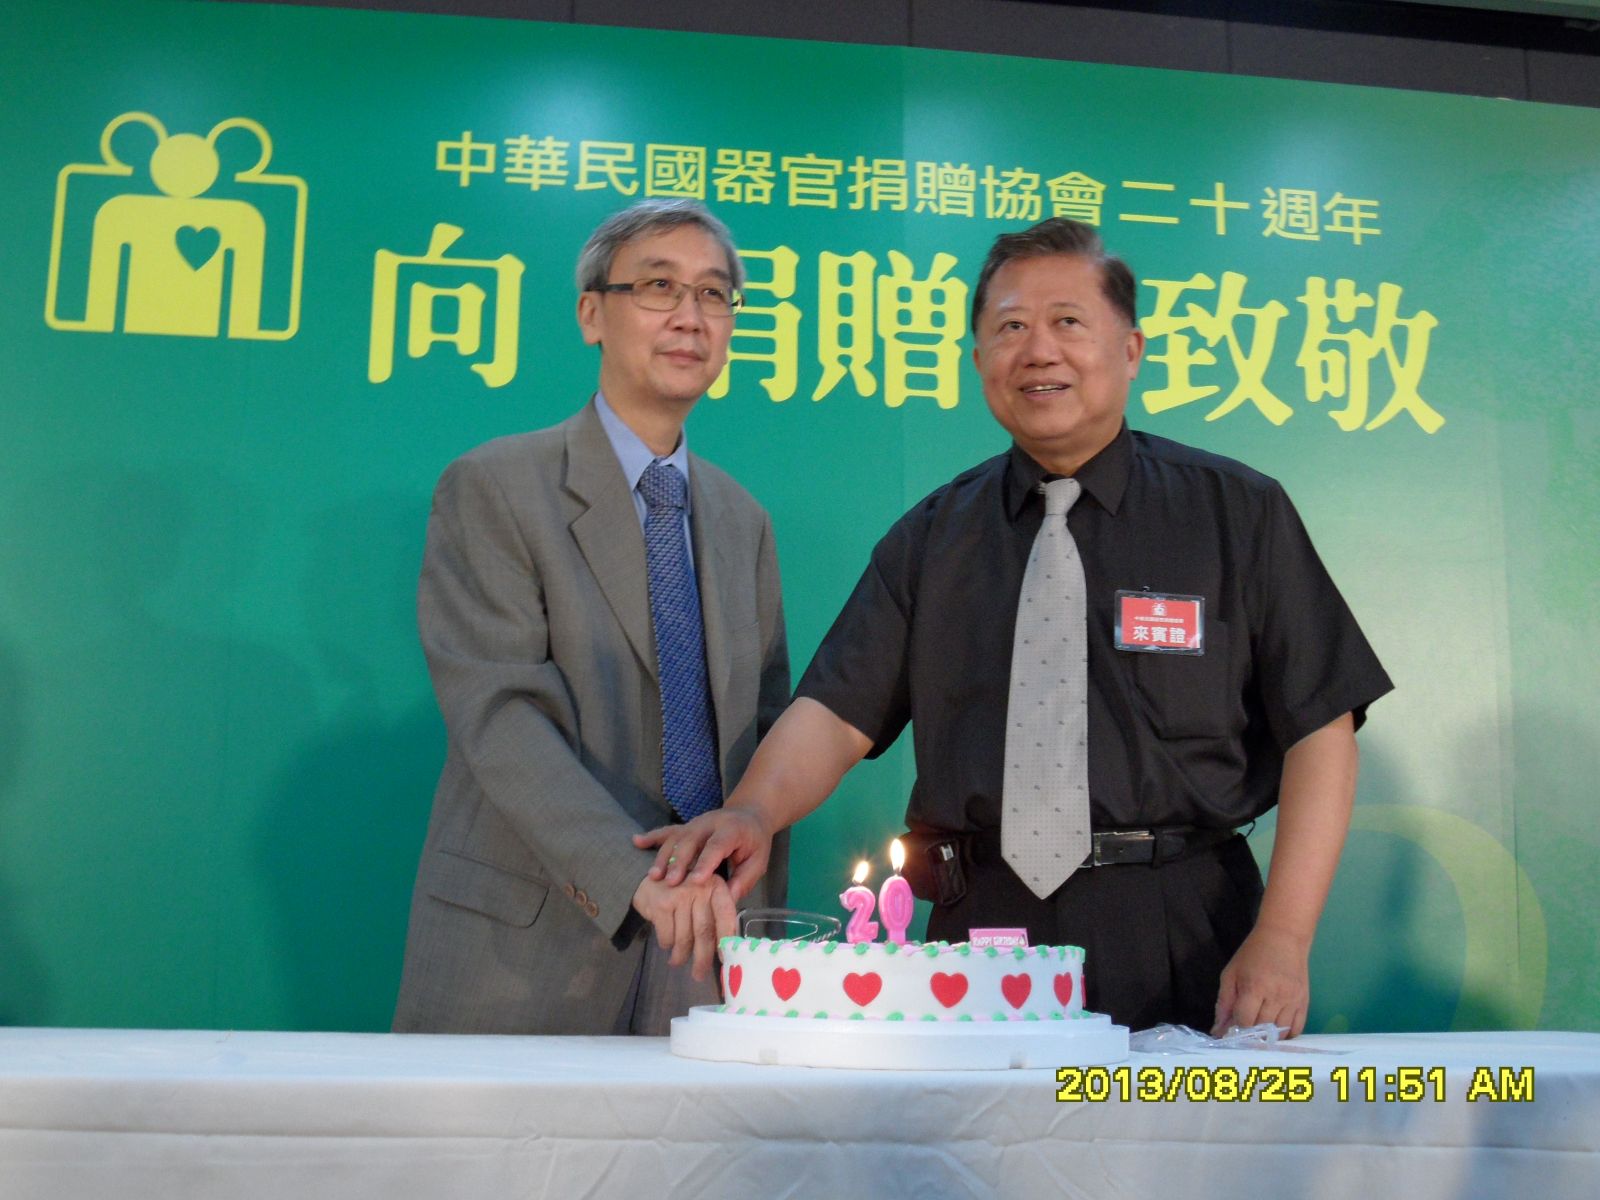 移植外科主任兼中華民國器官捐贈協會理事長 龍藉泉醫師(圖左)參加「中華民國器官捐贈協會」成立20週年紀念活動